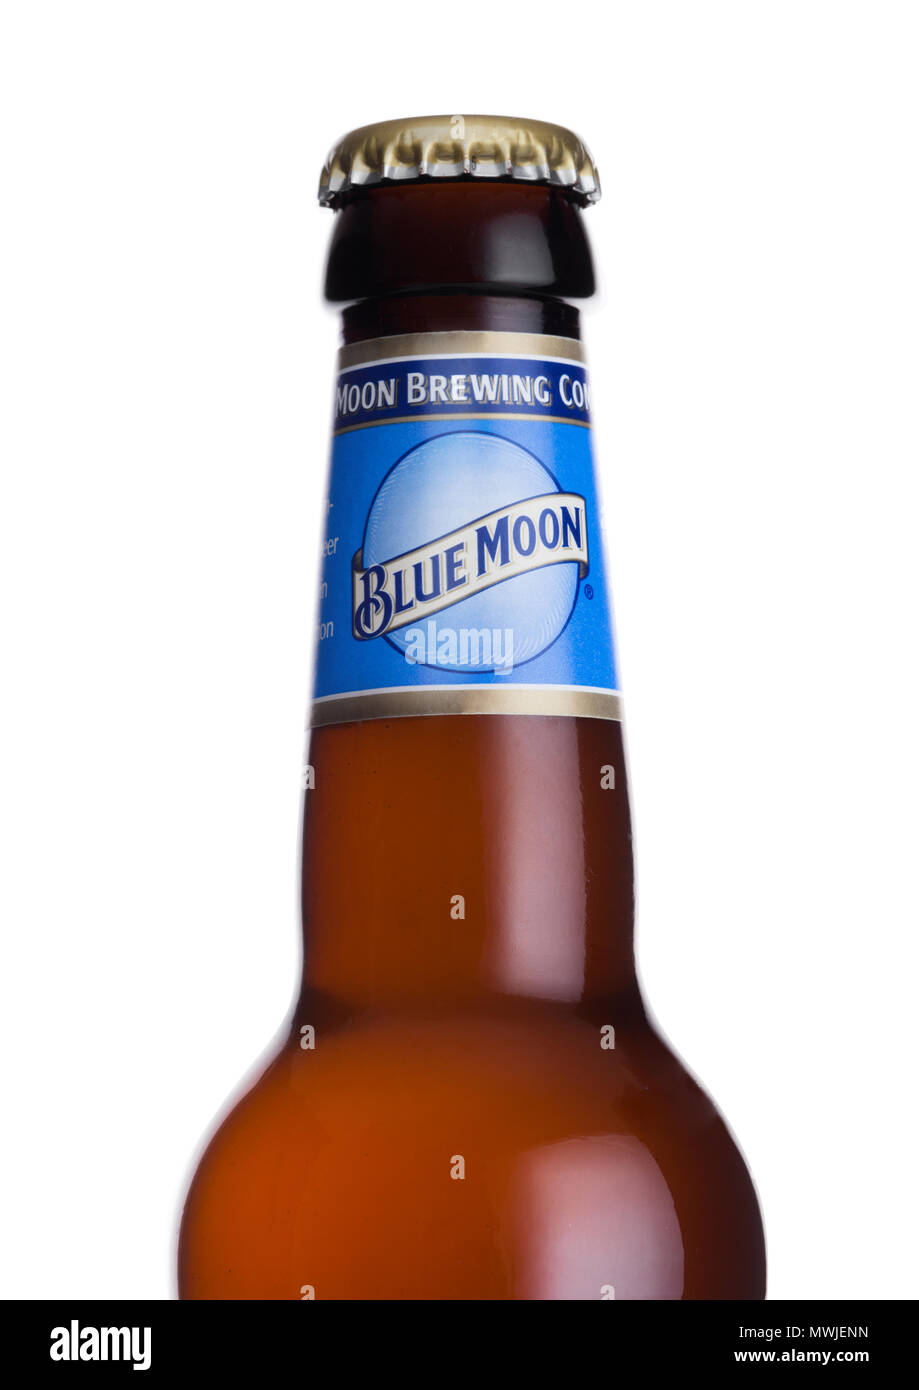 LONDON, UK, 01. JUNI 2018: Flasche Blue Moon belgischen weißes Bier, gebraut von MillerCoors auf weißem Hintergrund. Stockfoto